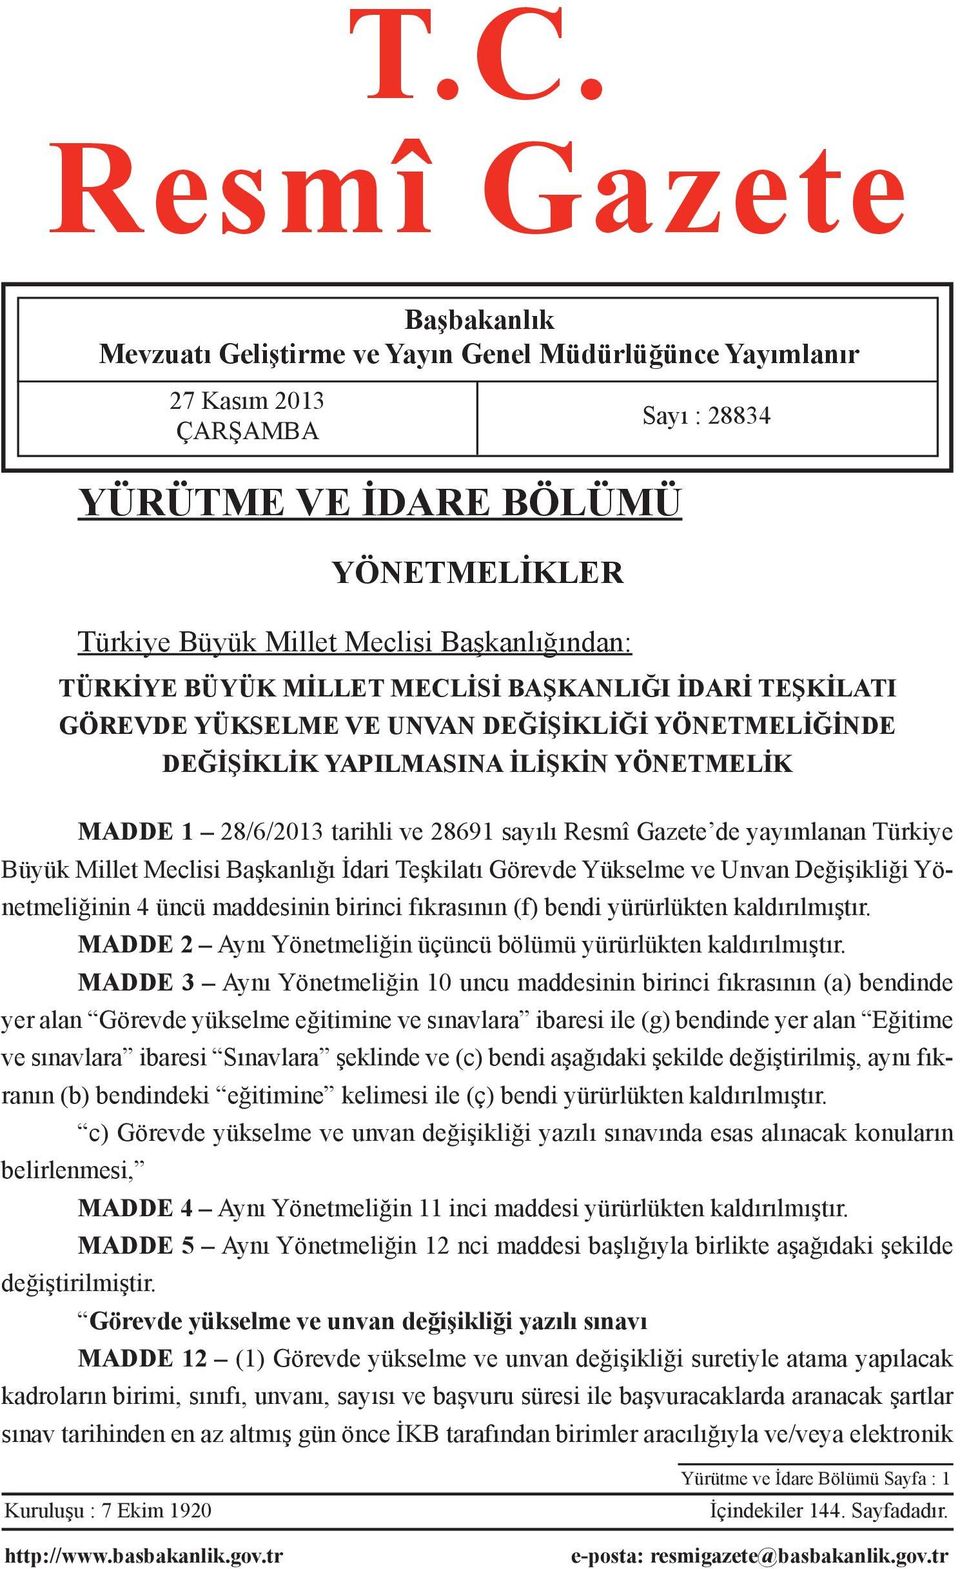 28691 sayılı Resmî Gazete de yayımlanan Türkiye Büyük Millet Meclisi Başkanlığı İdari Teşkilatı Görevde Yükselme ve Unvan Değişikliği Yönetmeliğinin 4 üncü maddesinin birinci fıkrasının (f) bendi